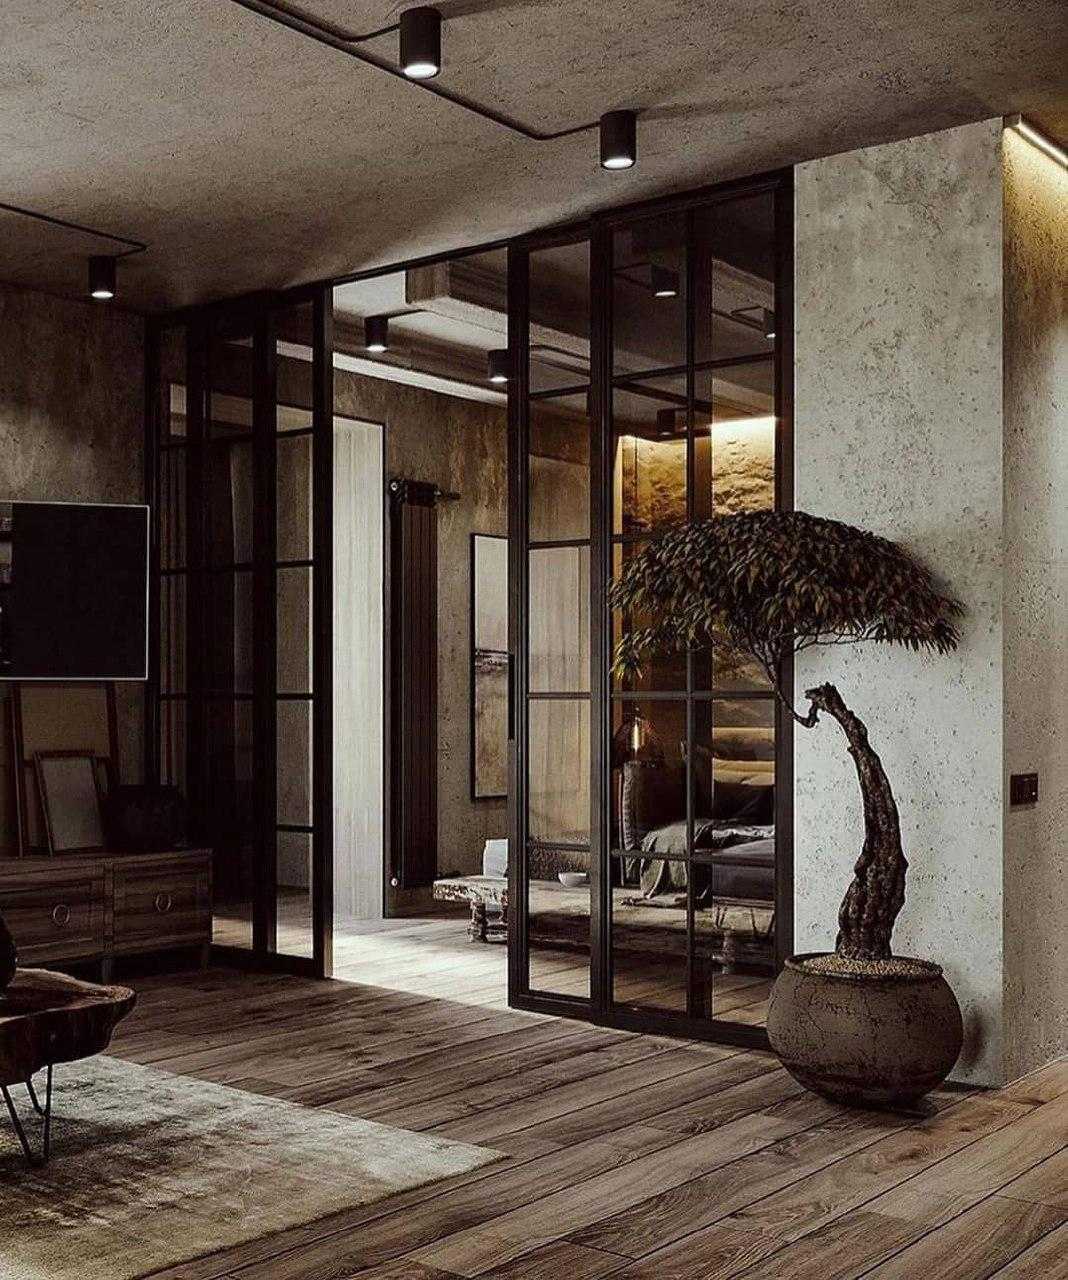 Квартира с деревянным декором